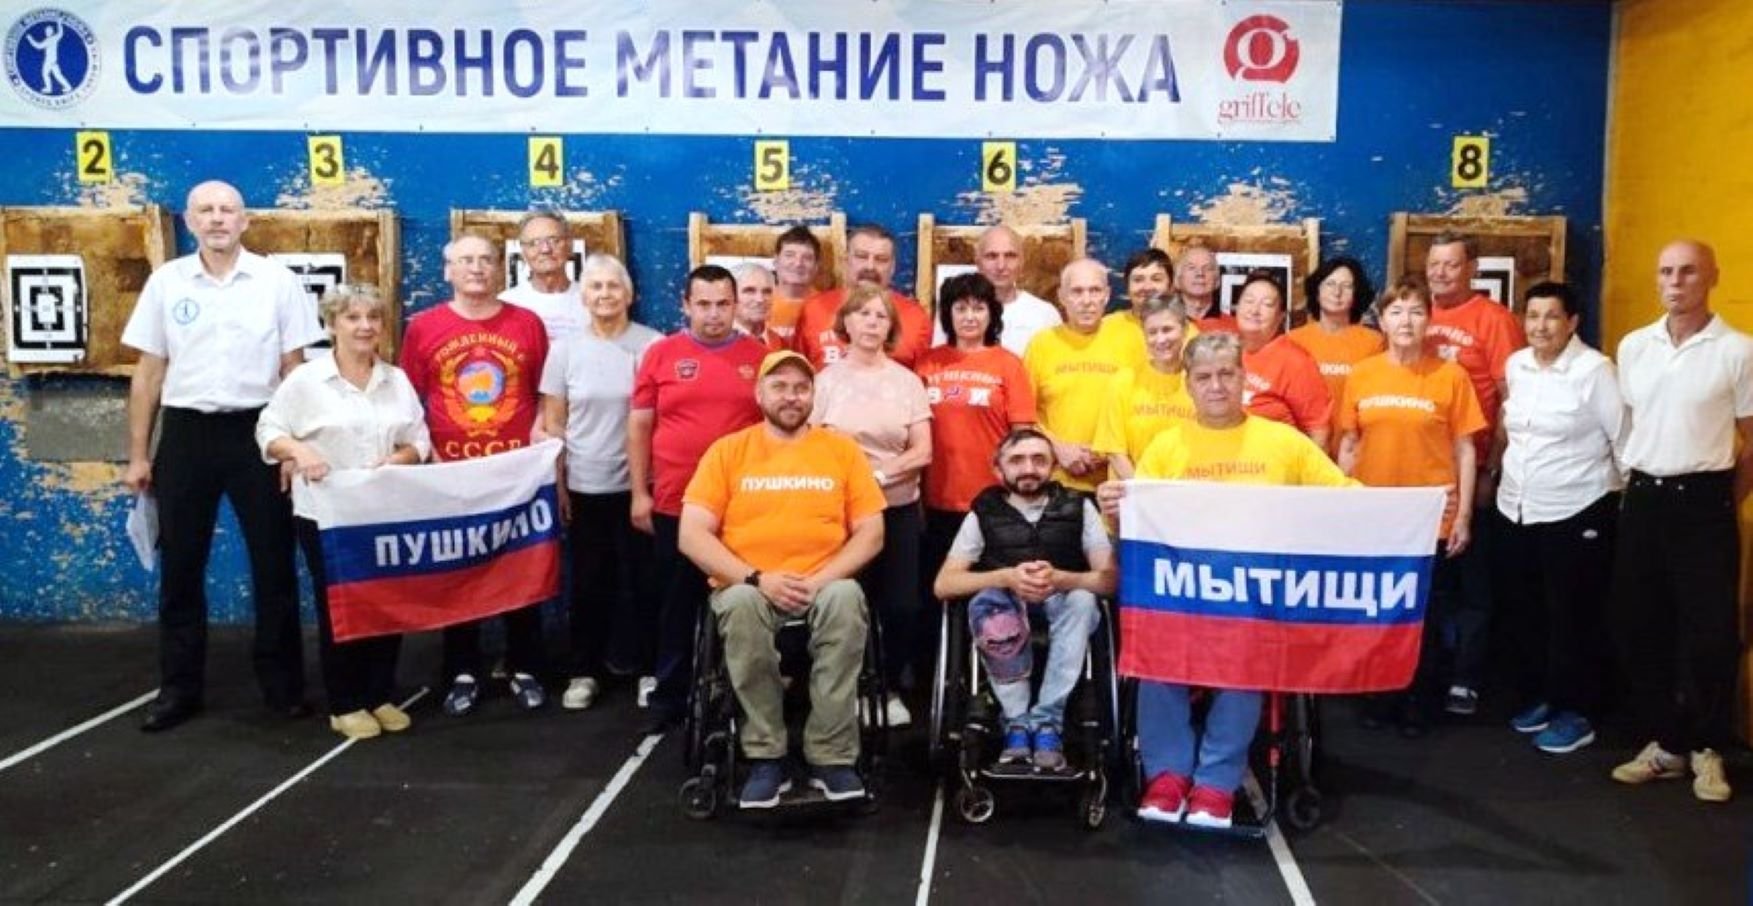 Спортсмены из горокруга Пушкинский завоевали четыре золотые медали по спортивному метанию ножа